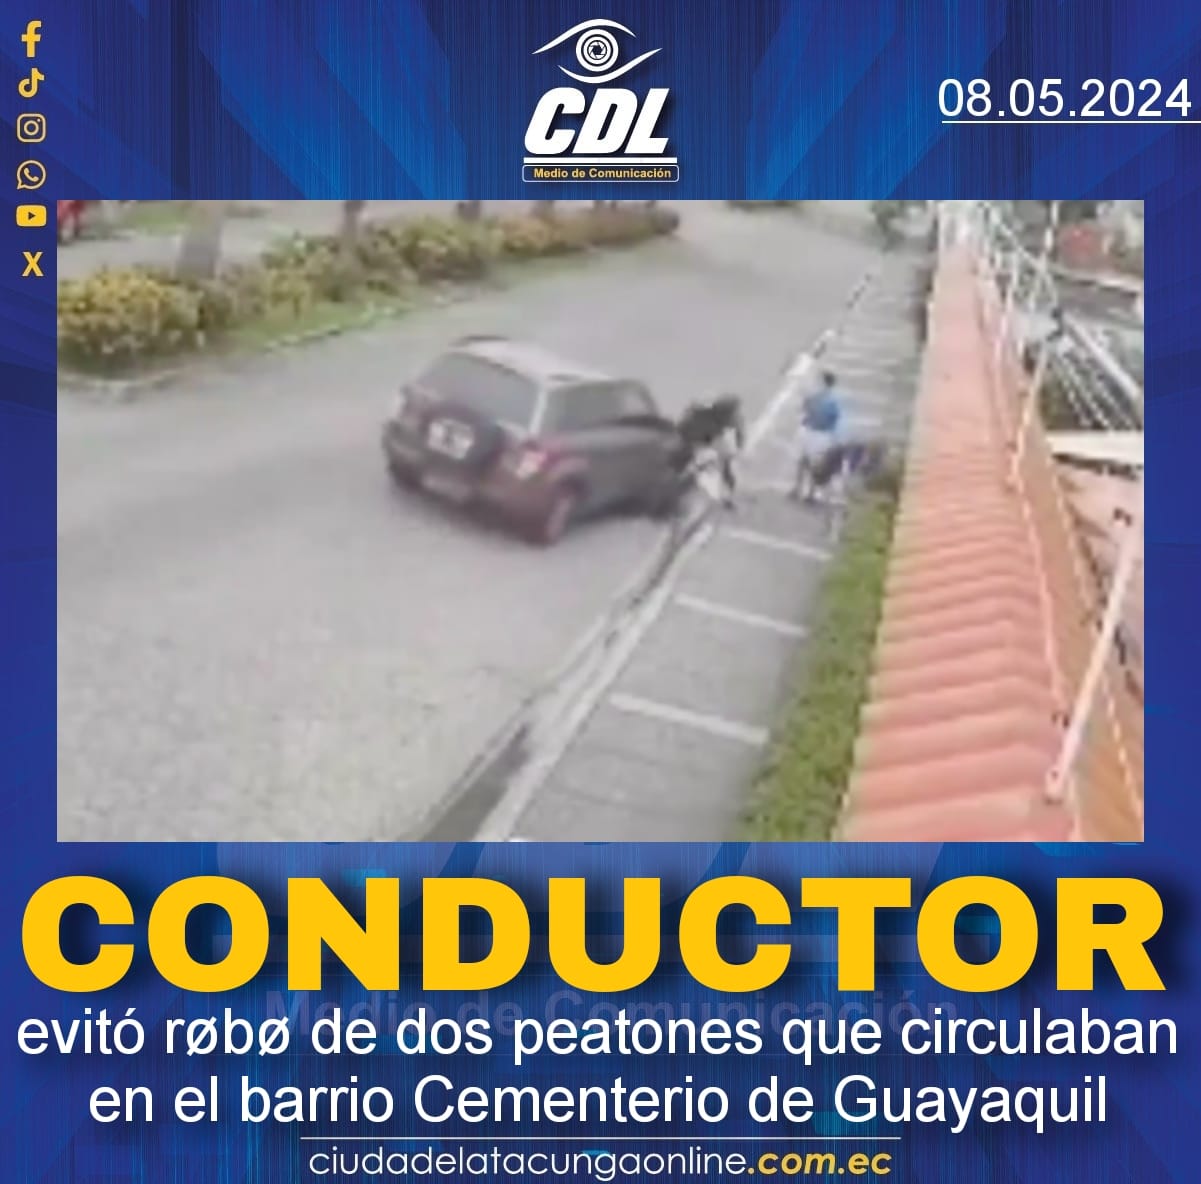 Conductor evitó røbø de dos peatones que circulaban en el barrio Cementerio de Guayaquil